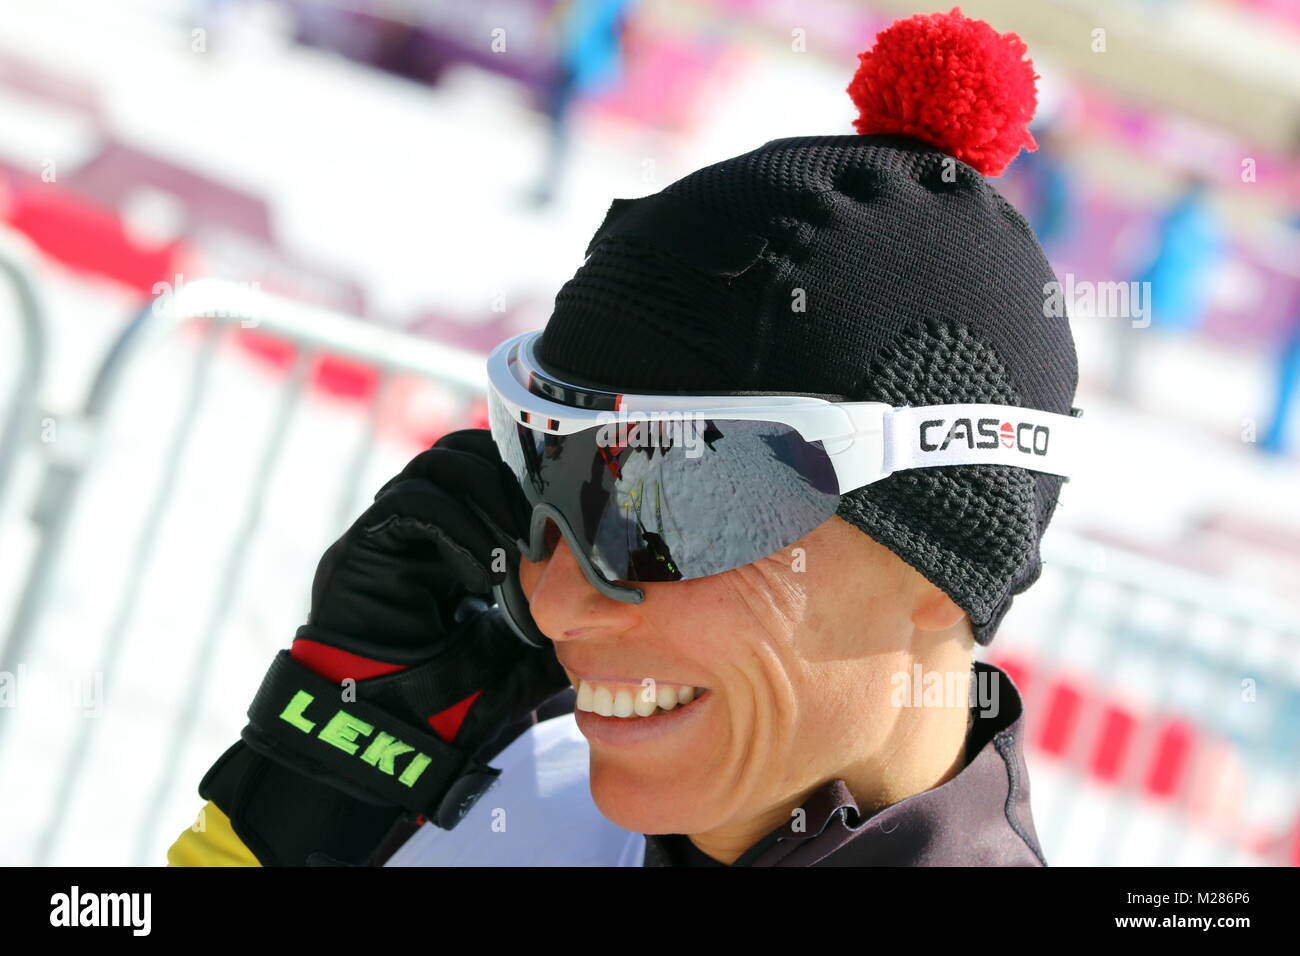 Andrea ESKAU Sitz-Skifahrerin Interview-Partner ist ein gefragter, Zweites der deutschen Formation Paralympischen Mannschaft dans Sotschi Sotschi 2014 Jeux paralympiques Jeux paralympiques d'hiver de Sotchi / 2014 Banque D'Images